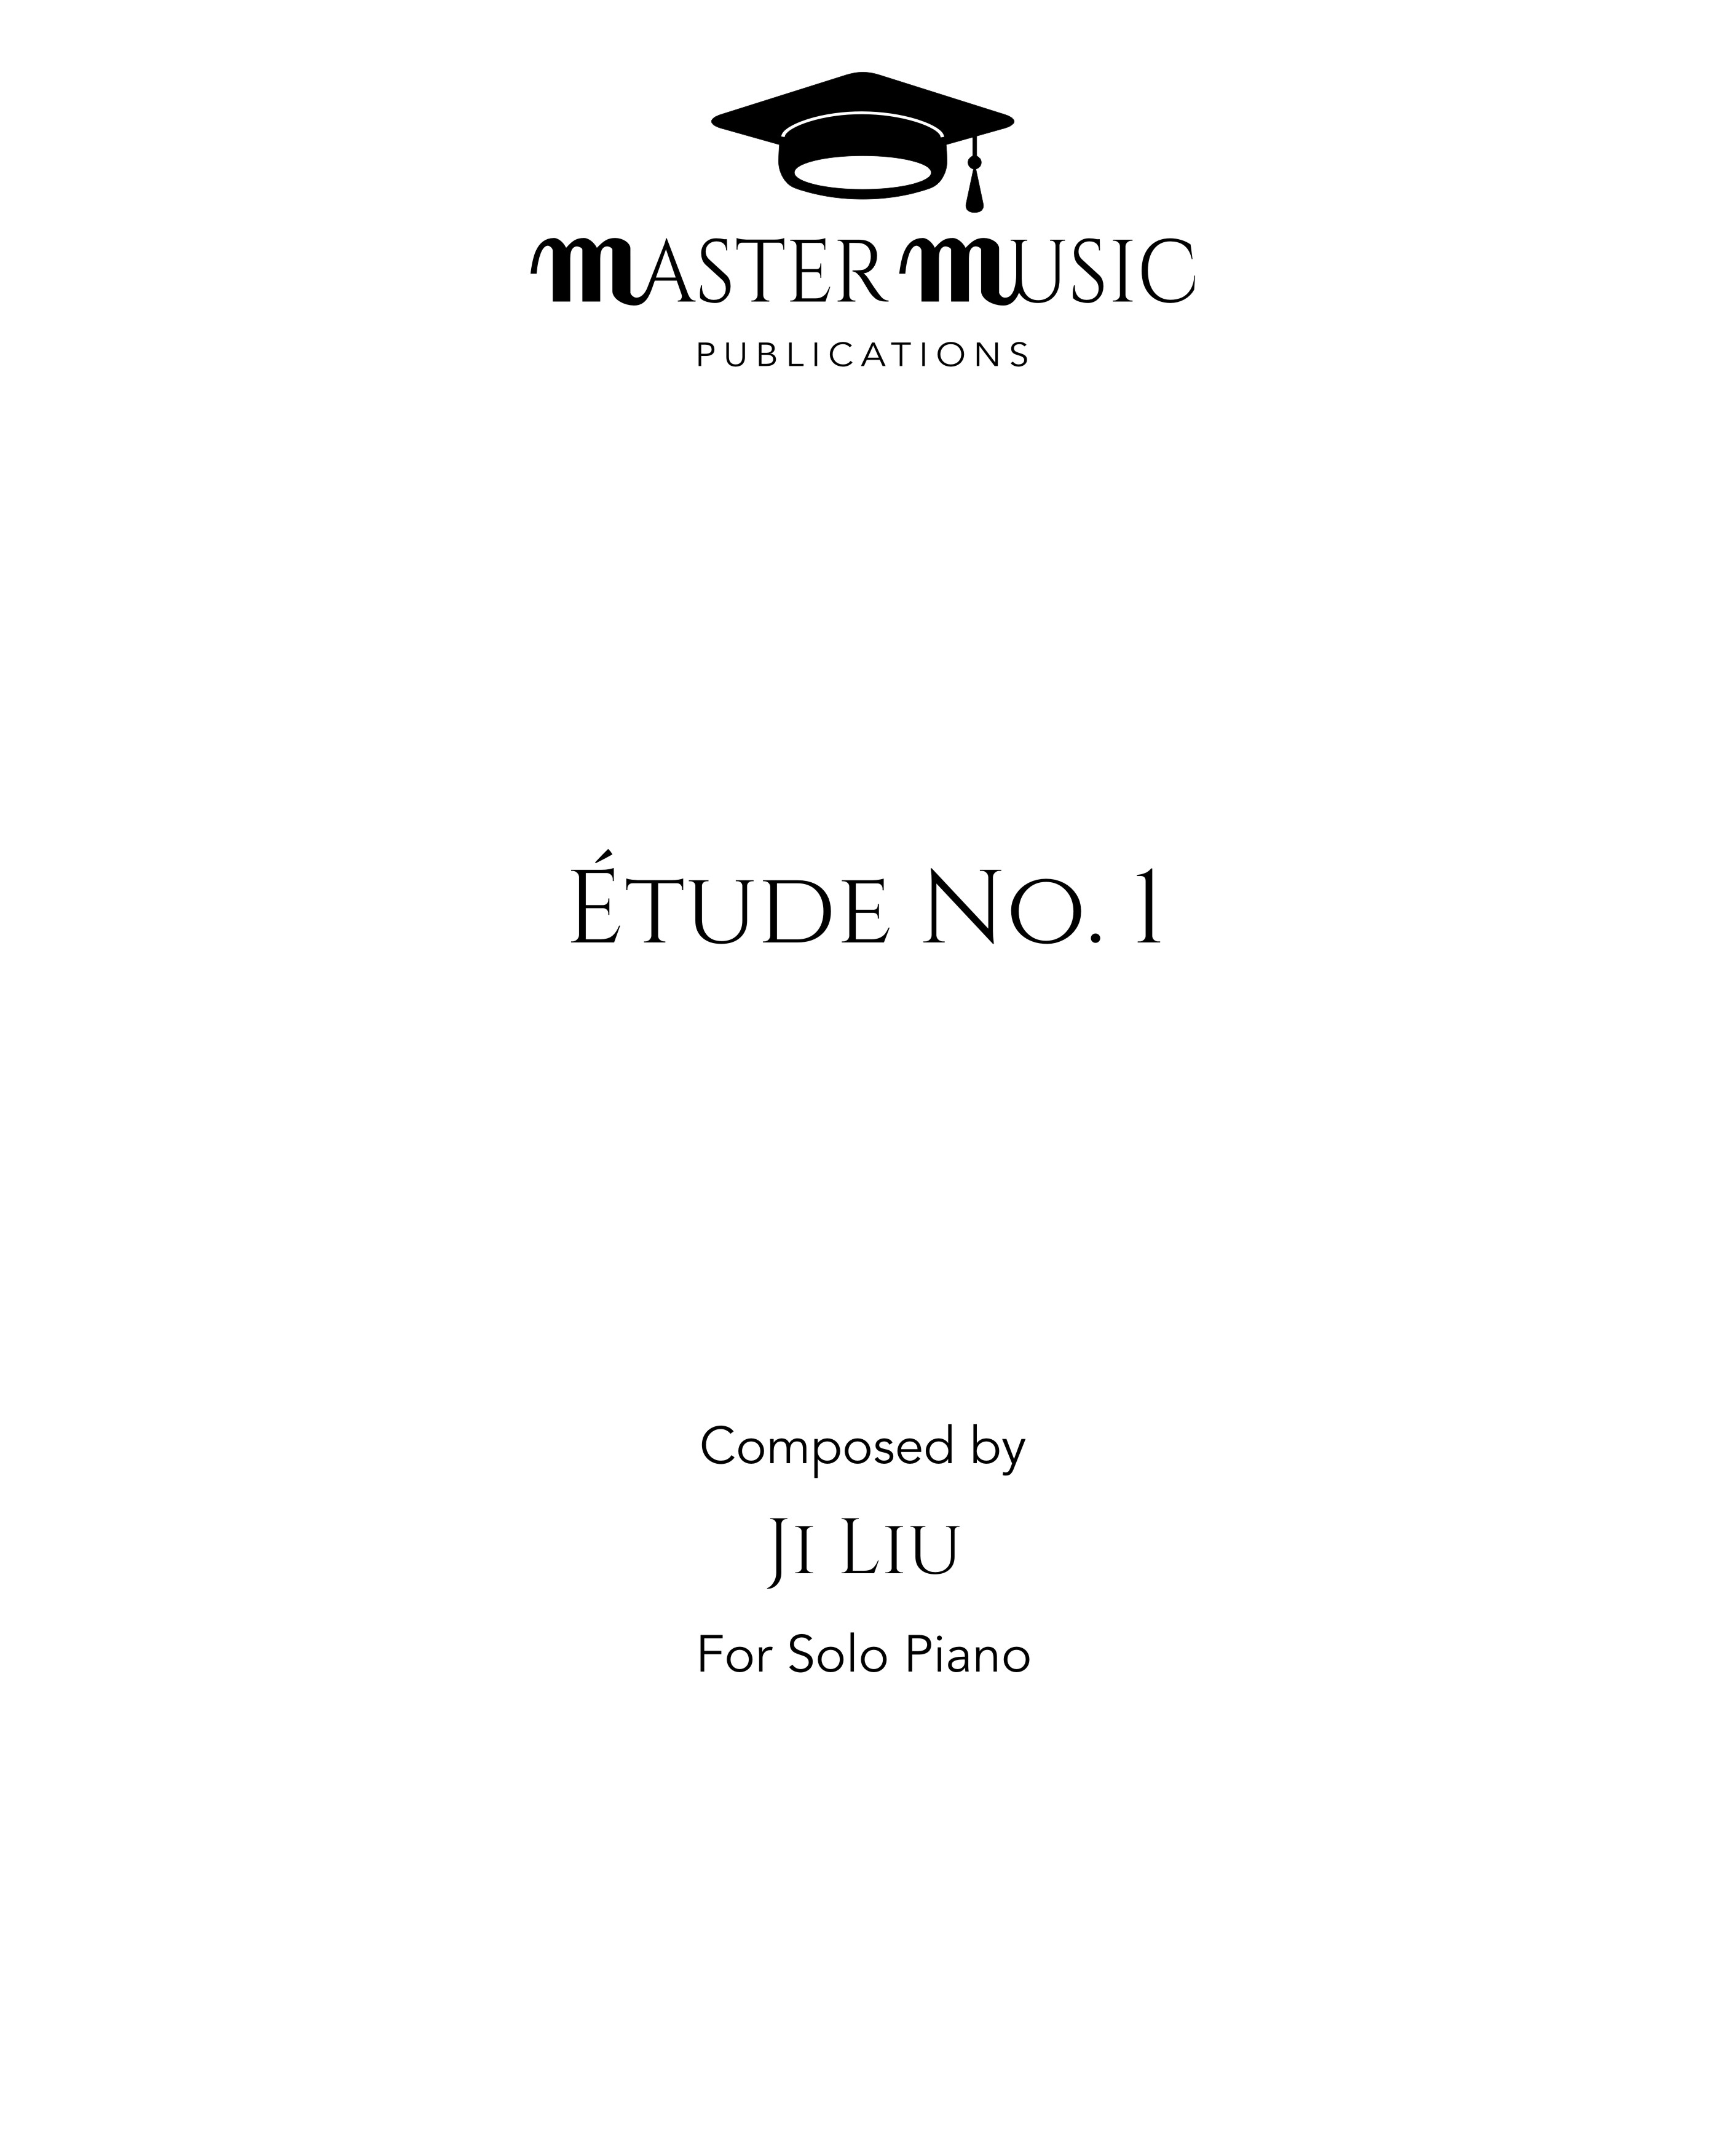 Étude No. 1 in C major